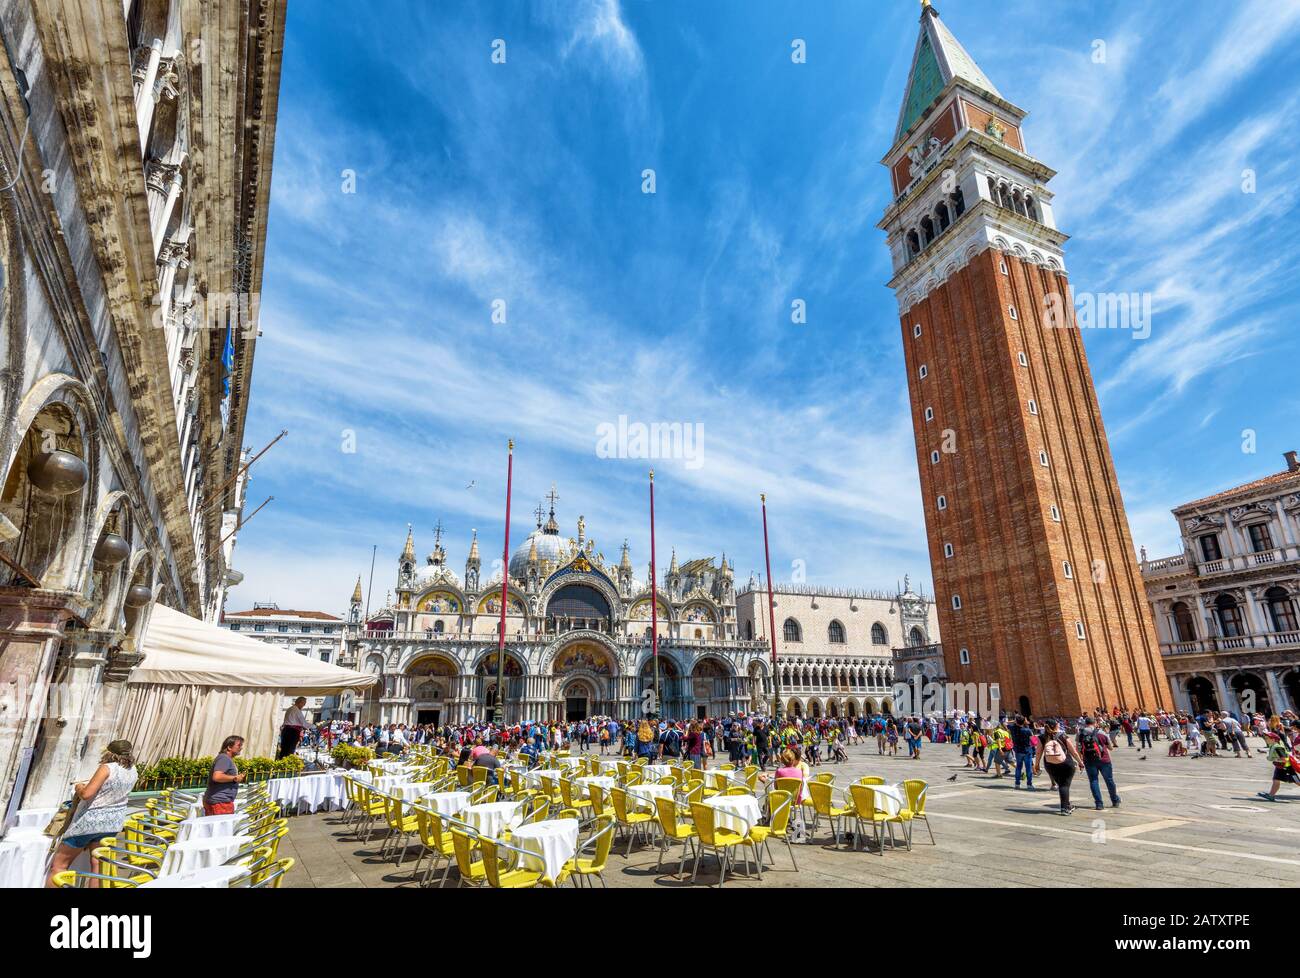 Venise, Italie - 20 Mai 2017 : Piazza San Marco Ou Place Saint Marc. Basilique et Campanile de San Marco dans le centre. C'est la place principale de Ven Banque D'Images